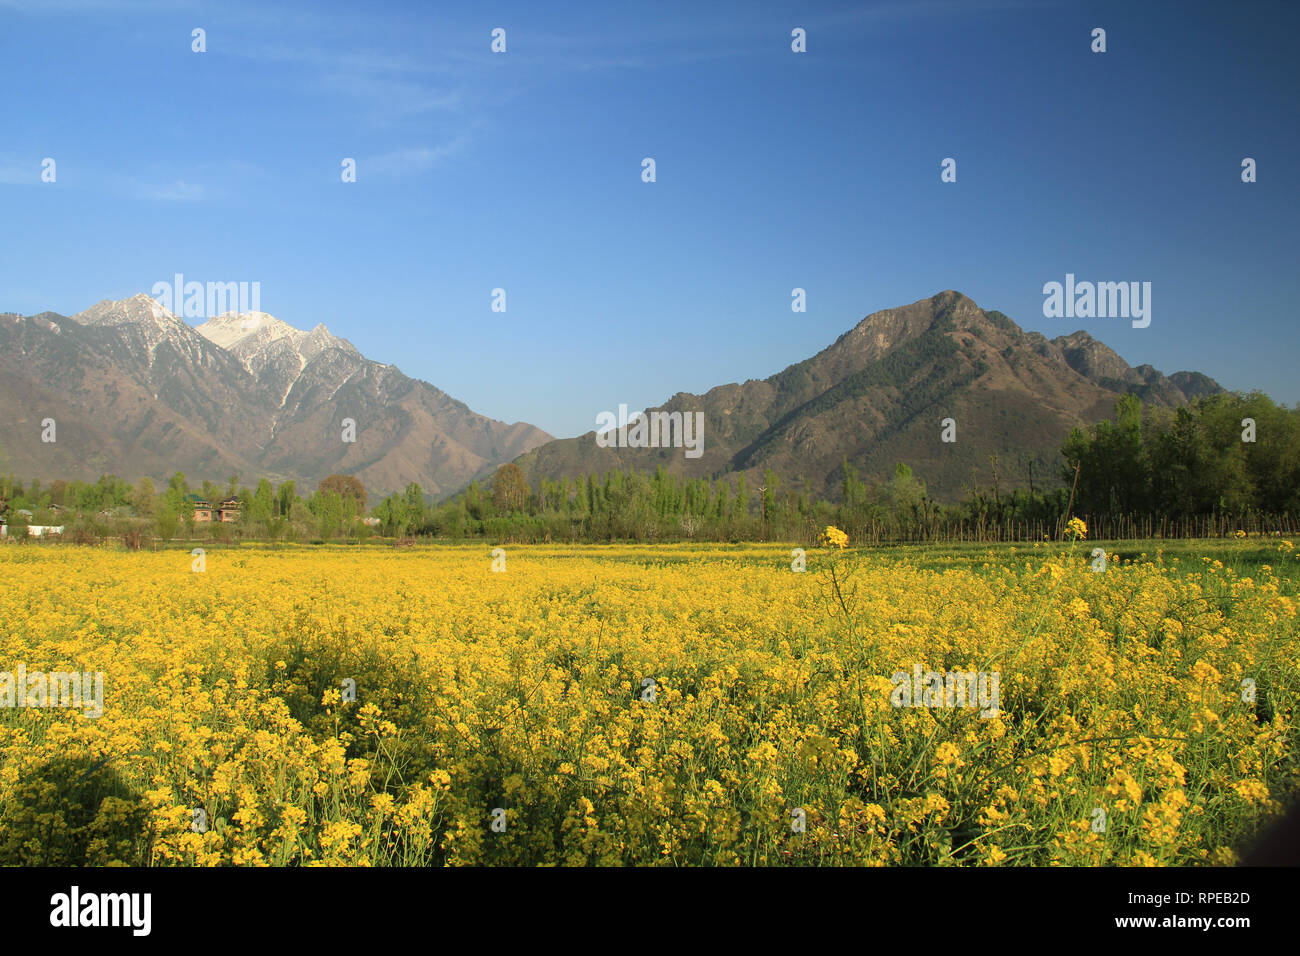 Las flores pueden ser vistos en plena floración en un campo de mostaza en las afueras de Srinagar, capital de verano de la Cachemira india. Foto de stock